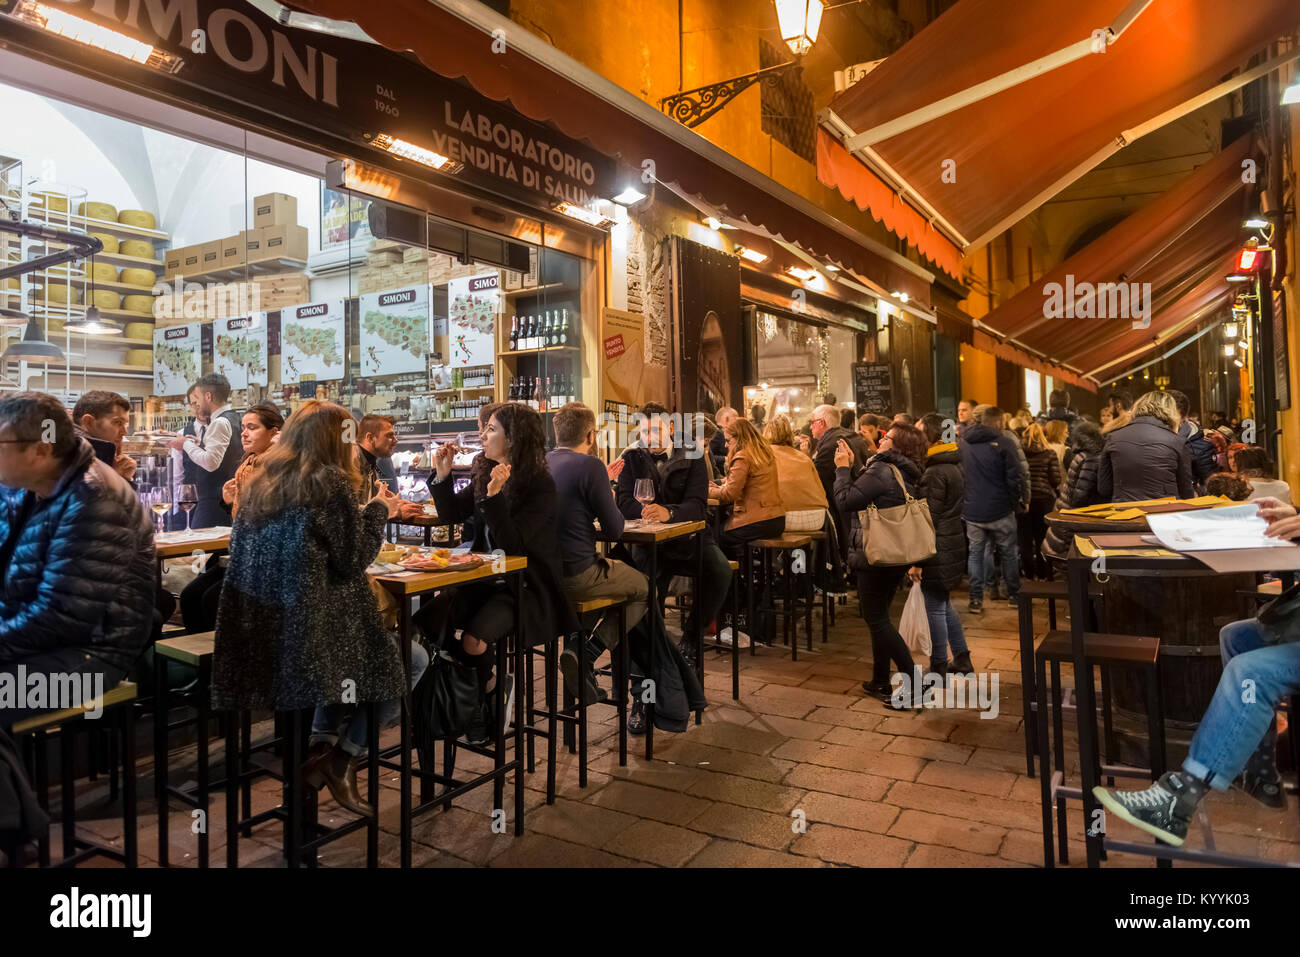 Bologne, Italie - des gens assis au restaurant dans restaurants, cafés et bars dans la Via Pescherie Vecchie, une rue de la ville de Bologne, Italie pendant la nuit Banque D'Images